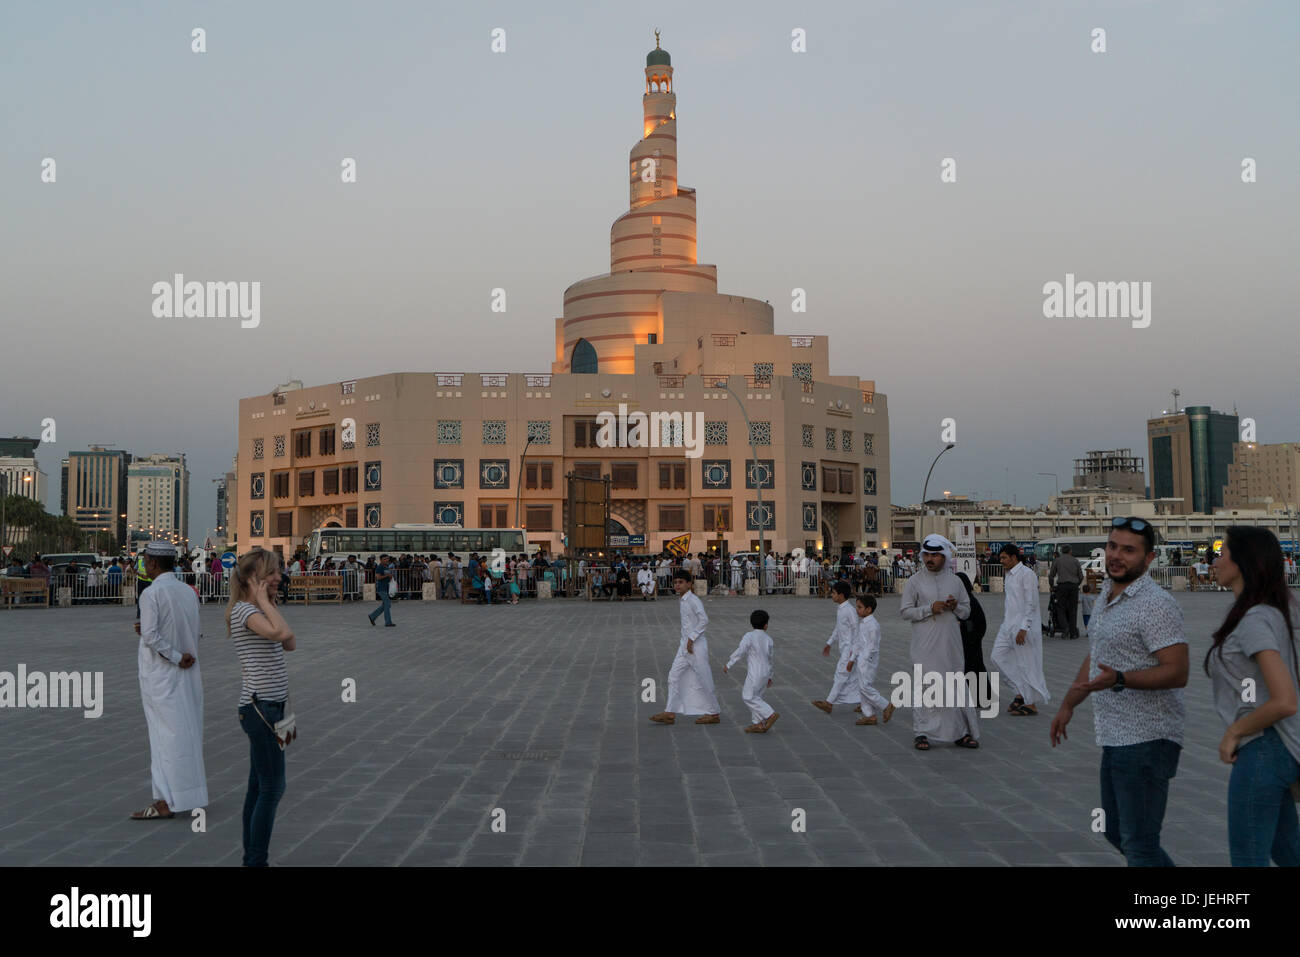 Le cheikh Abdulla bin Zaid Al Mahmoud Centre culturel islamique est une initiative de l'État du Qatar, créé avec une vision de présenter la beauté de la culture qatarie Banque D'Images